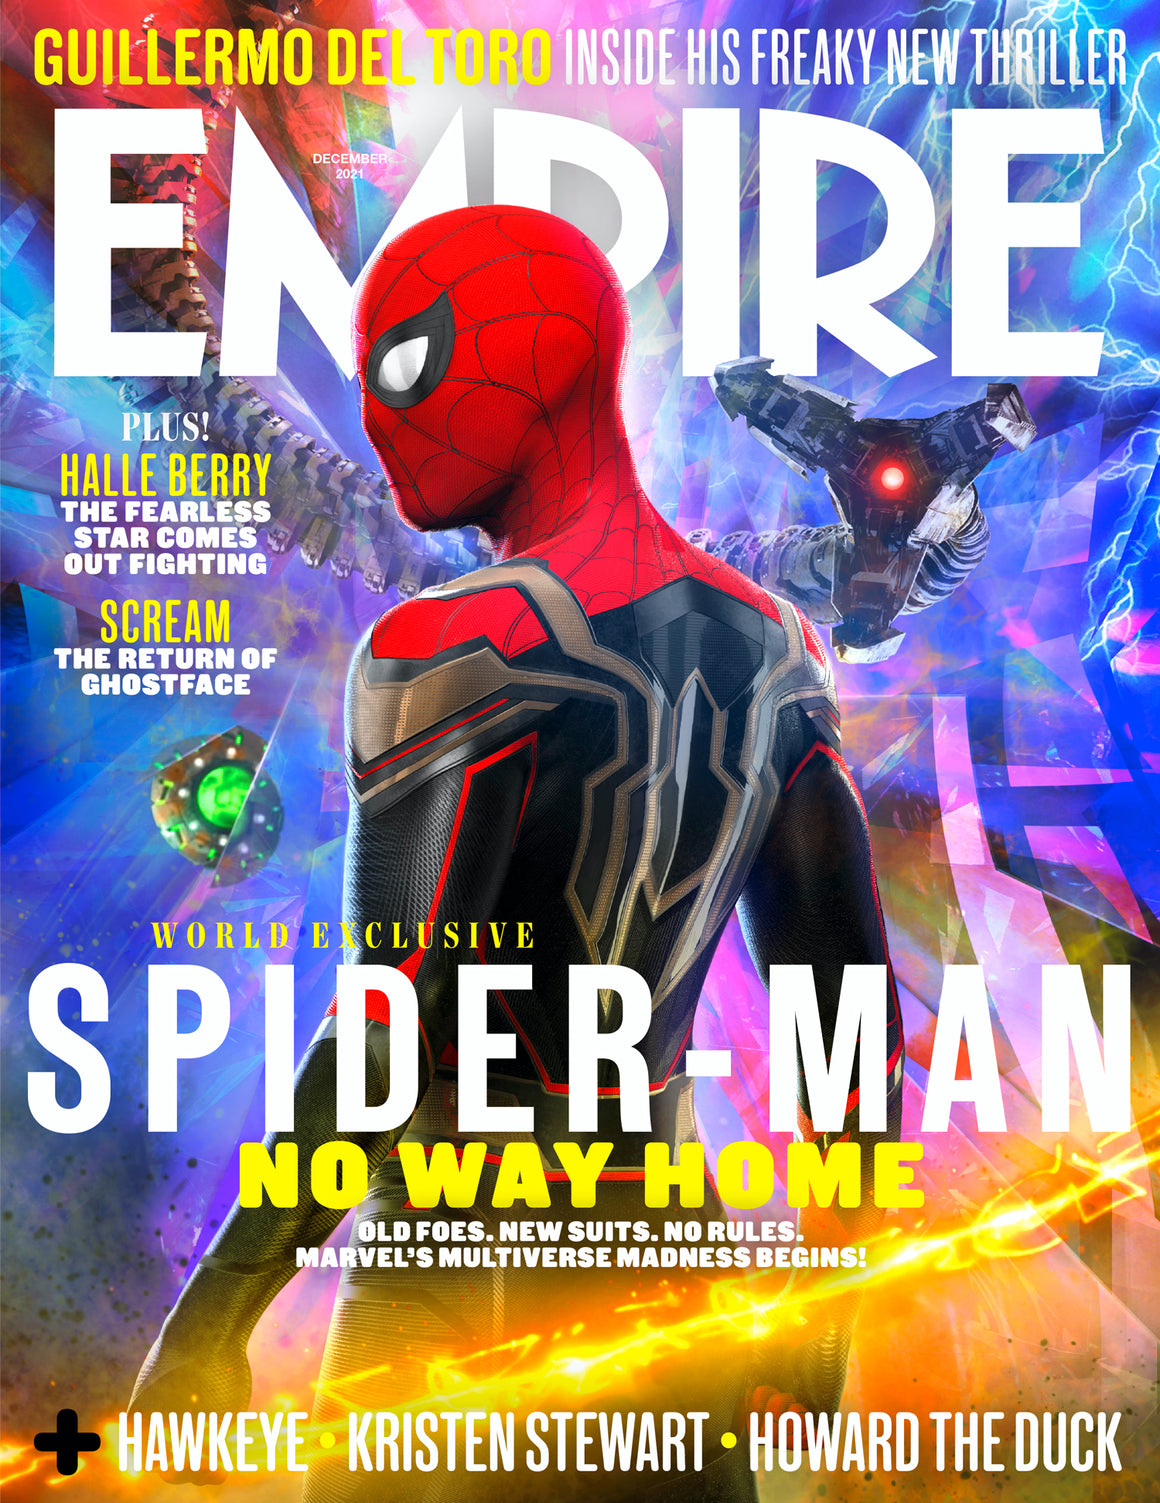 UK Empire Magazine December 2021: SPIDER-MAN NO WAY HOME TOM HOLLAND